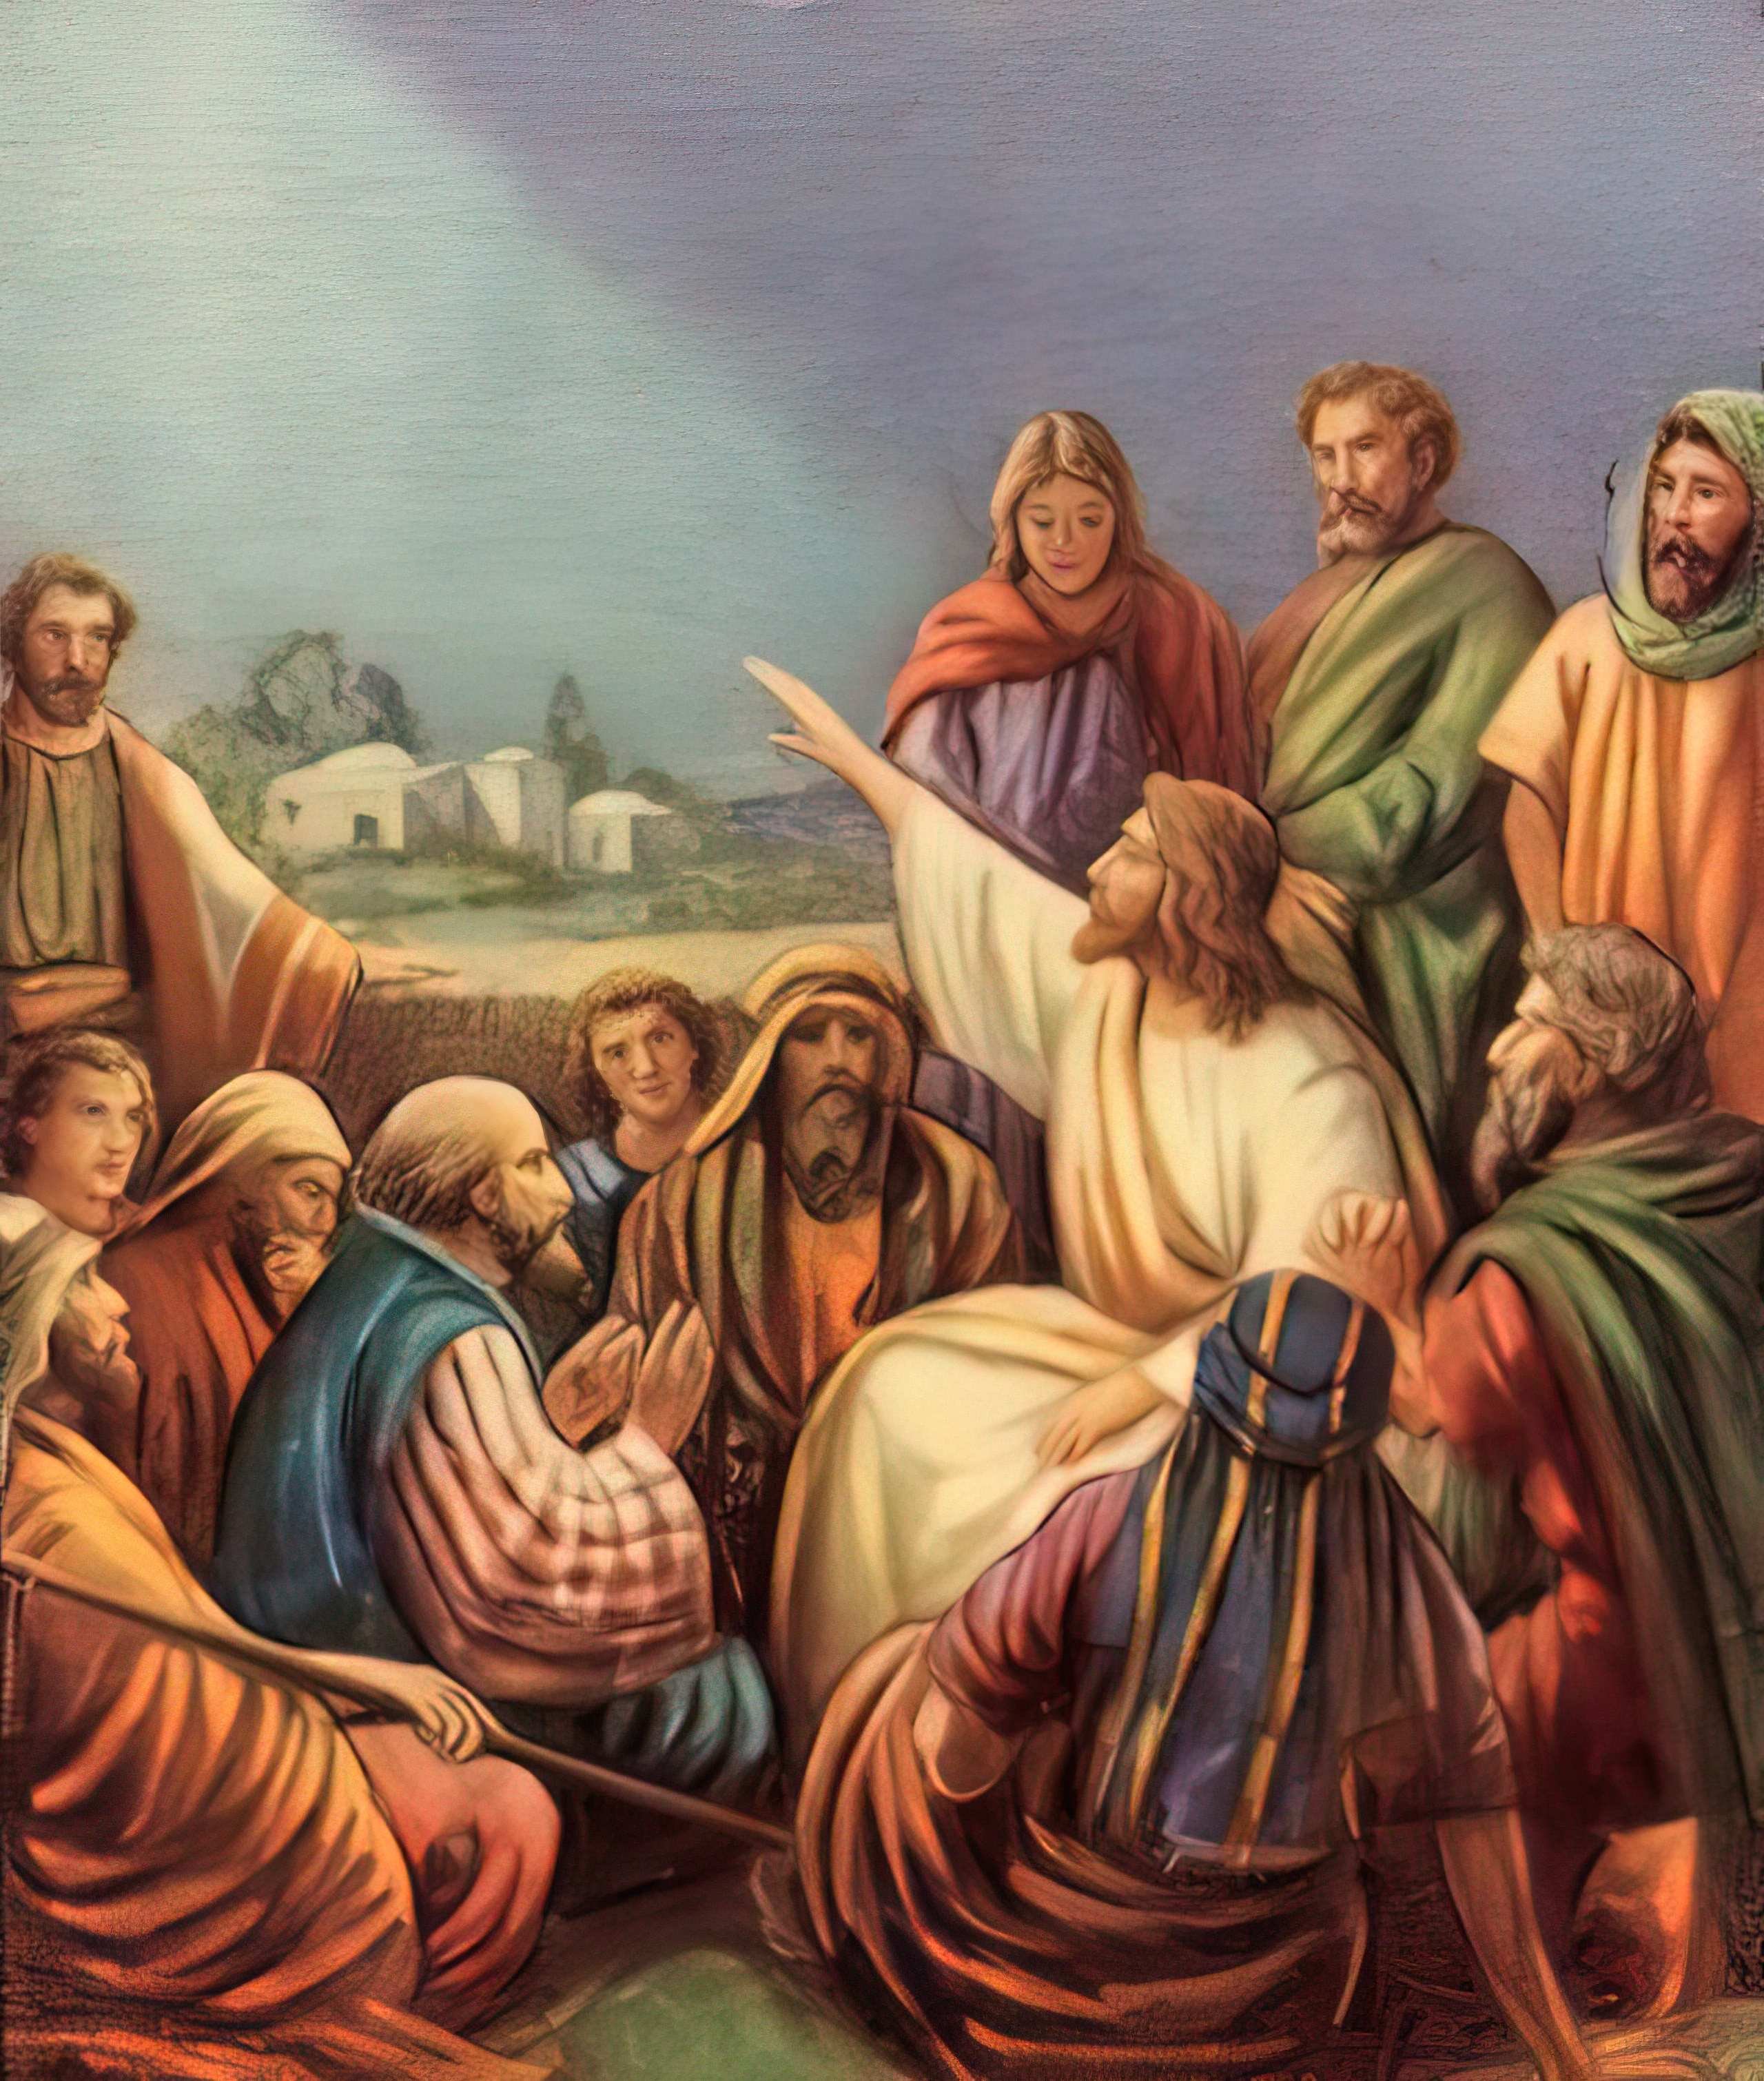 Vanha koulutaulu, jossa Jeesuksen ympärillä ihmisiä. Jeesus osoittaa kädellään kohti taivasta.